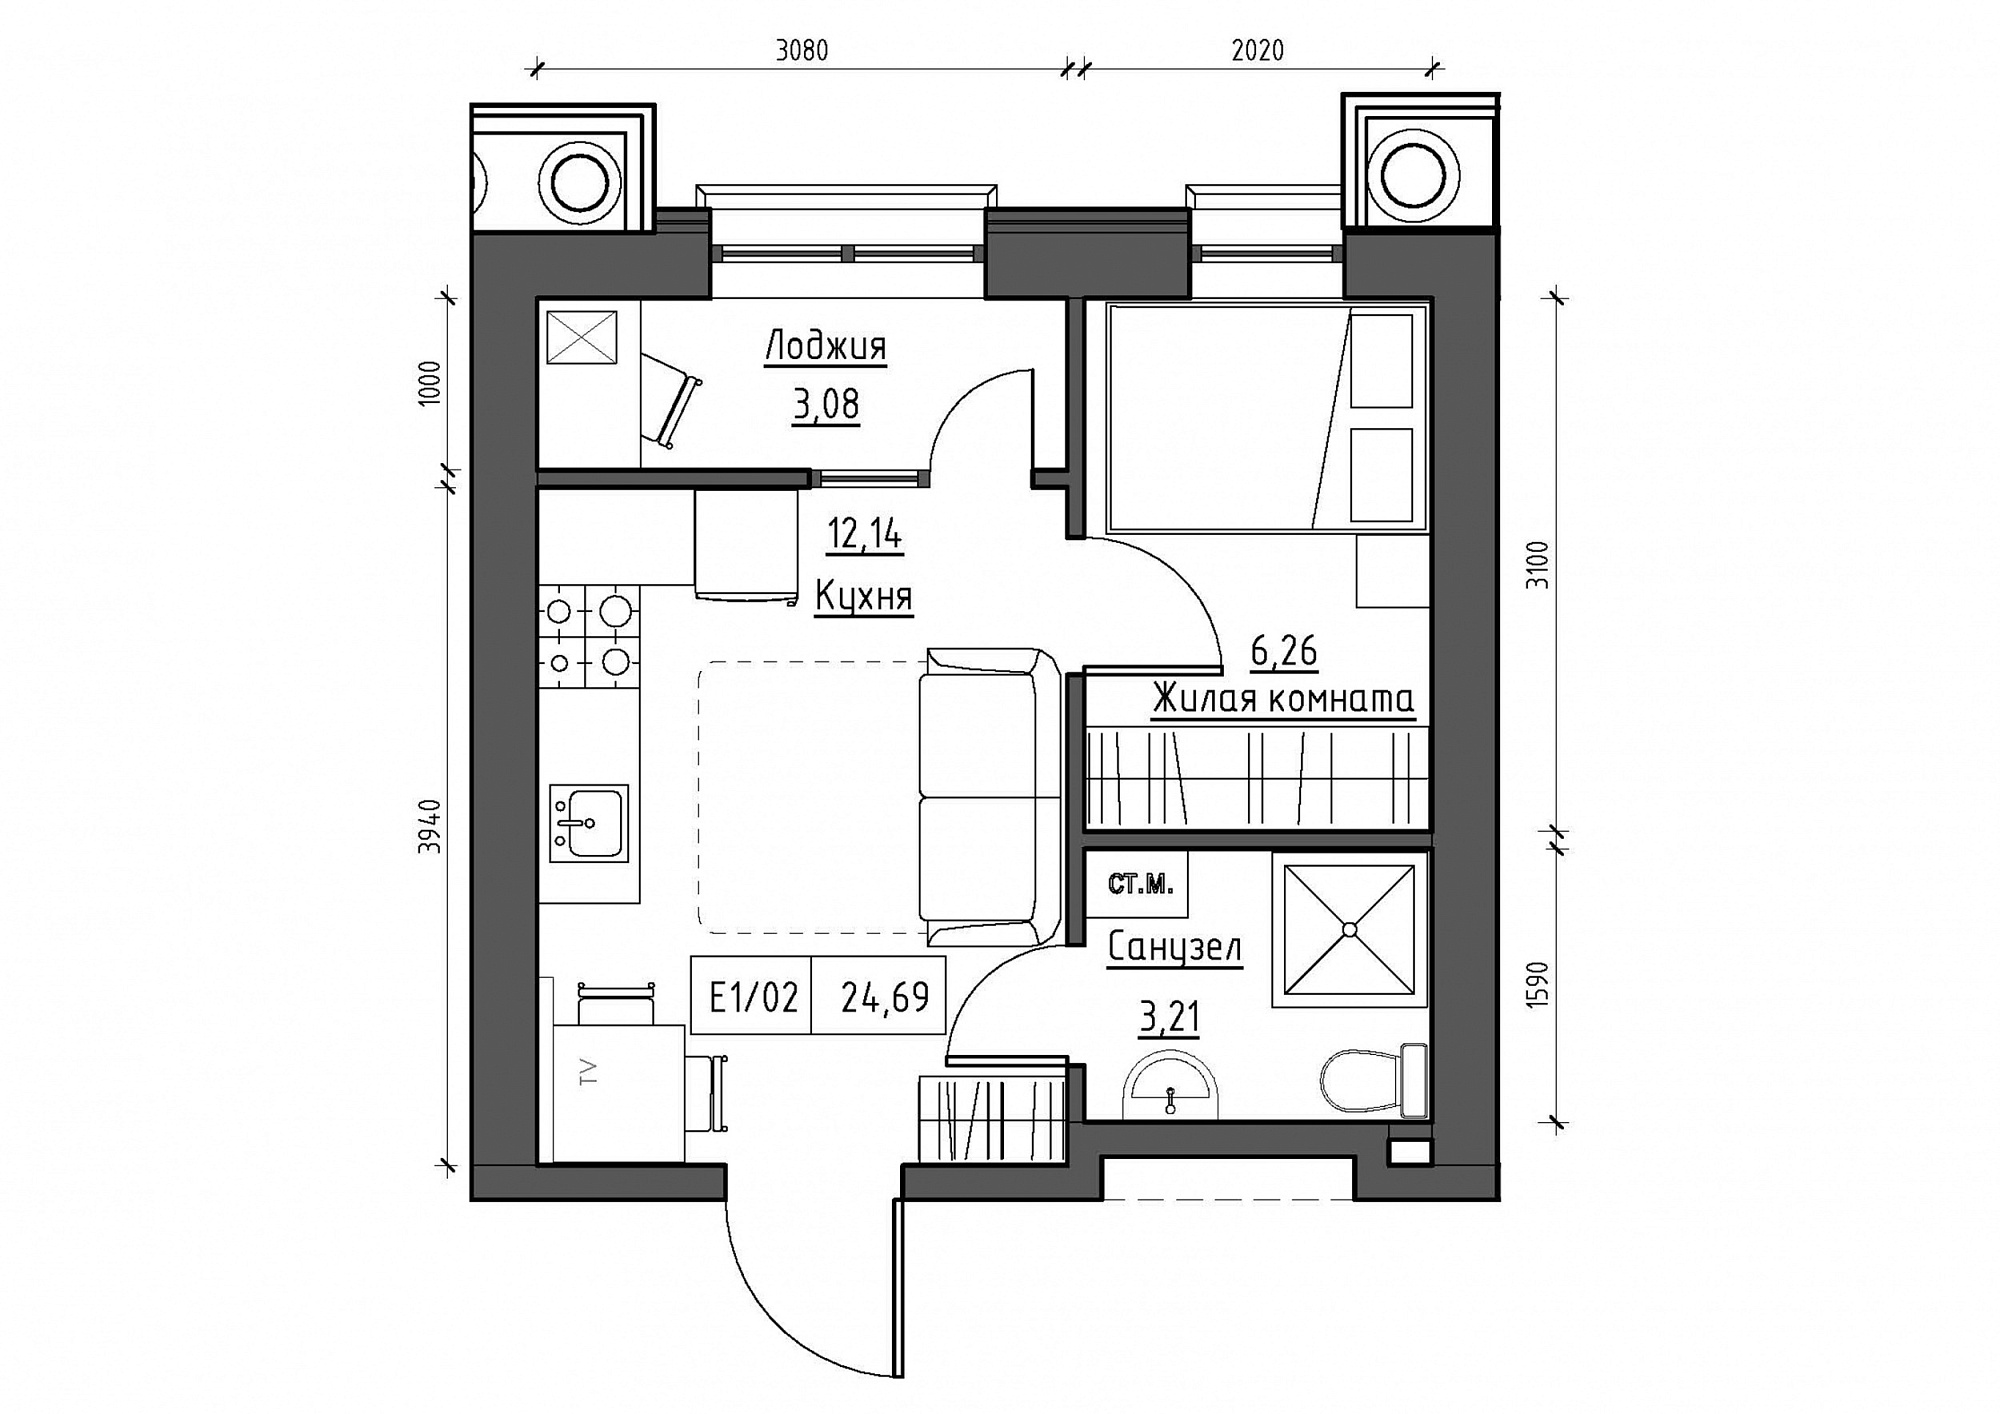 Планировка 1-к квартира площей 25.11м2, KS-012-03/0002.